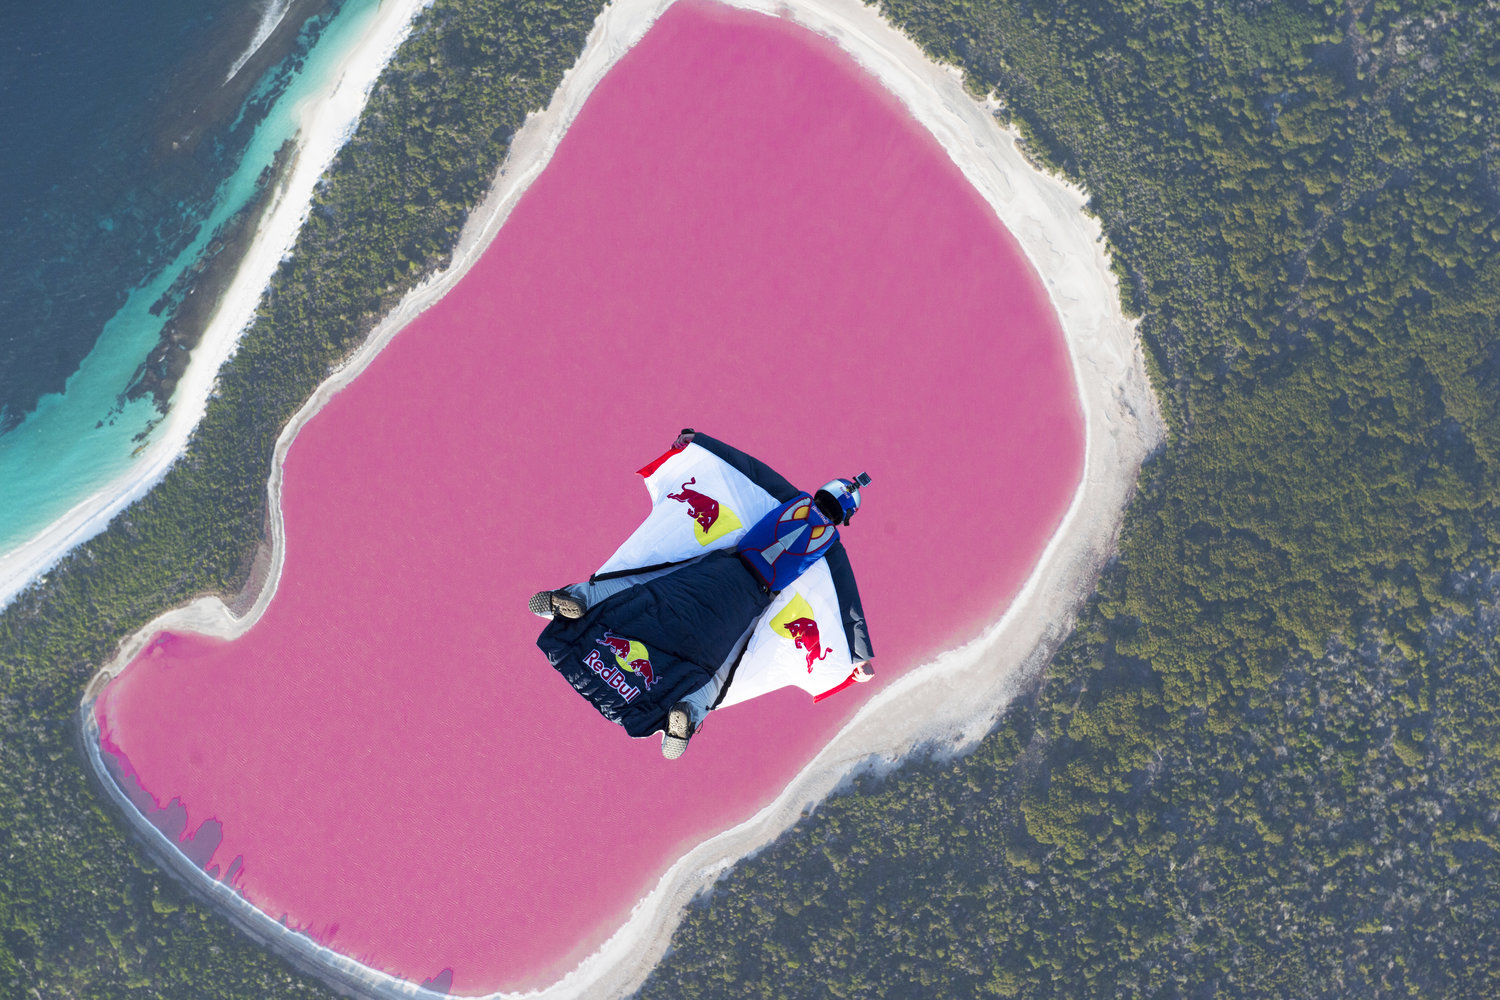 Un survol en wingsuit spectaculaire au dessus d'un lac rose